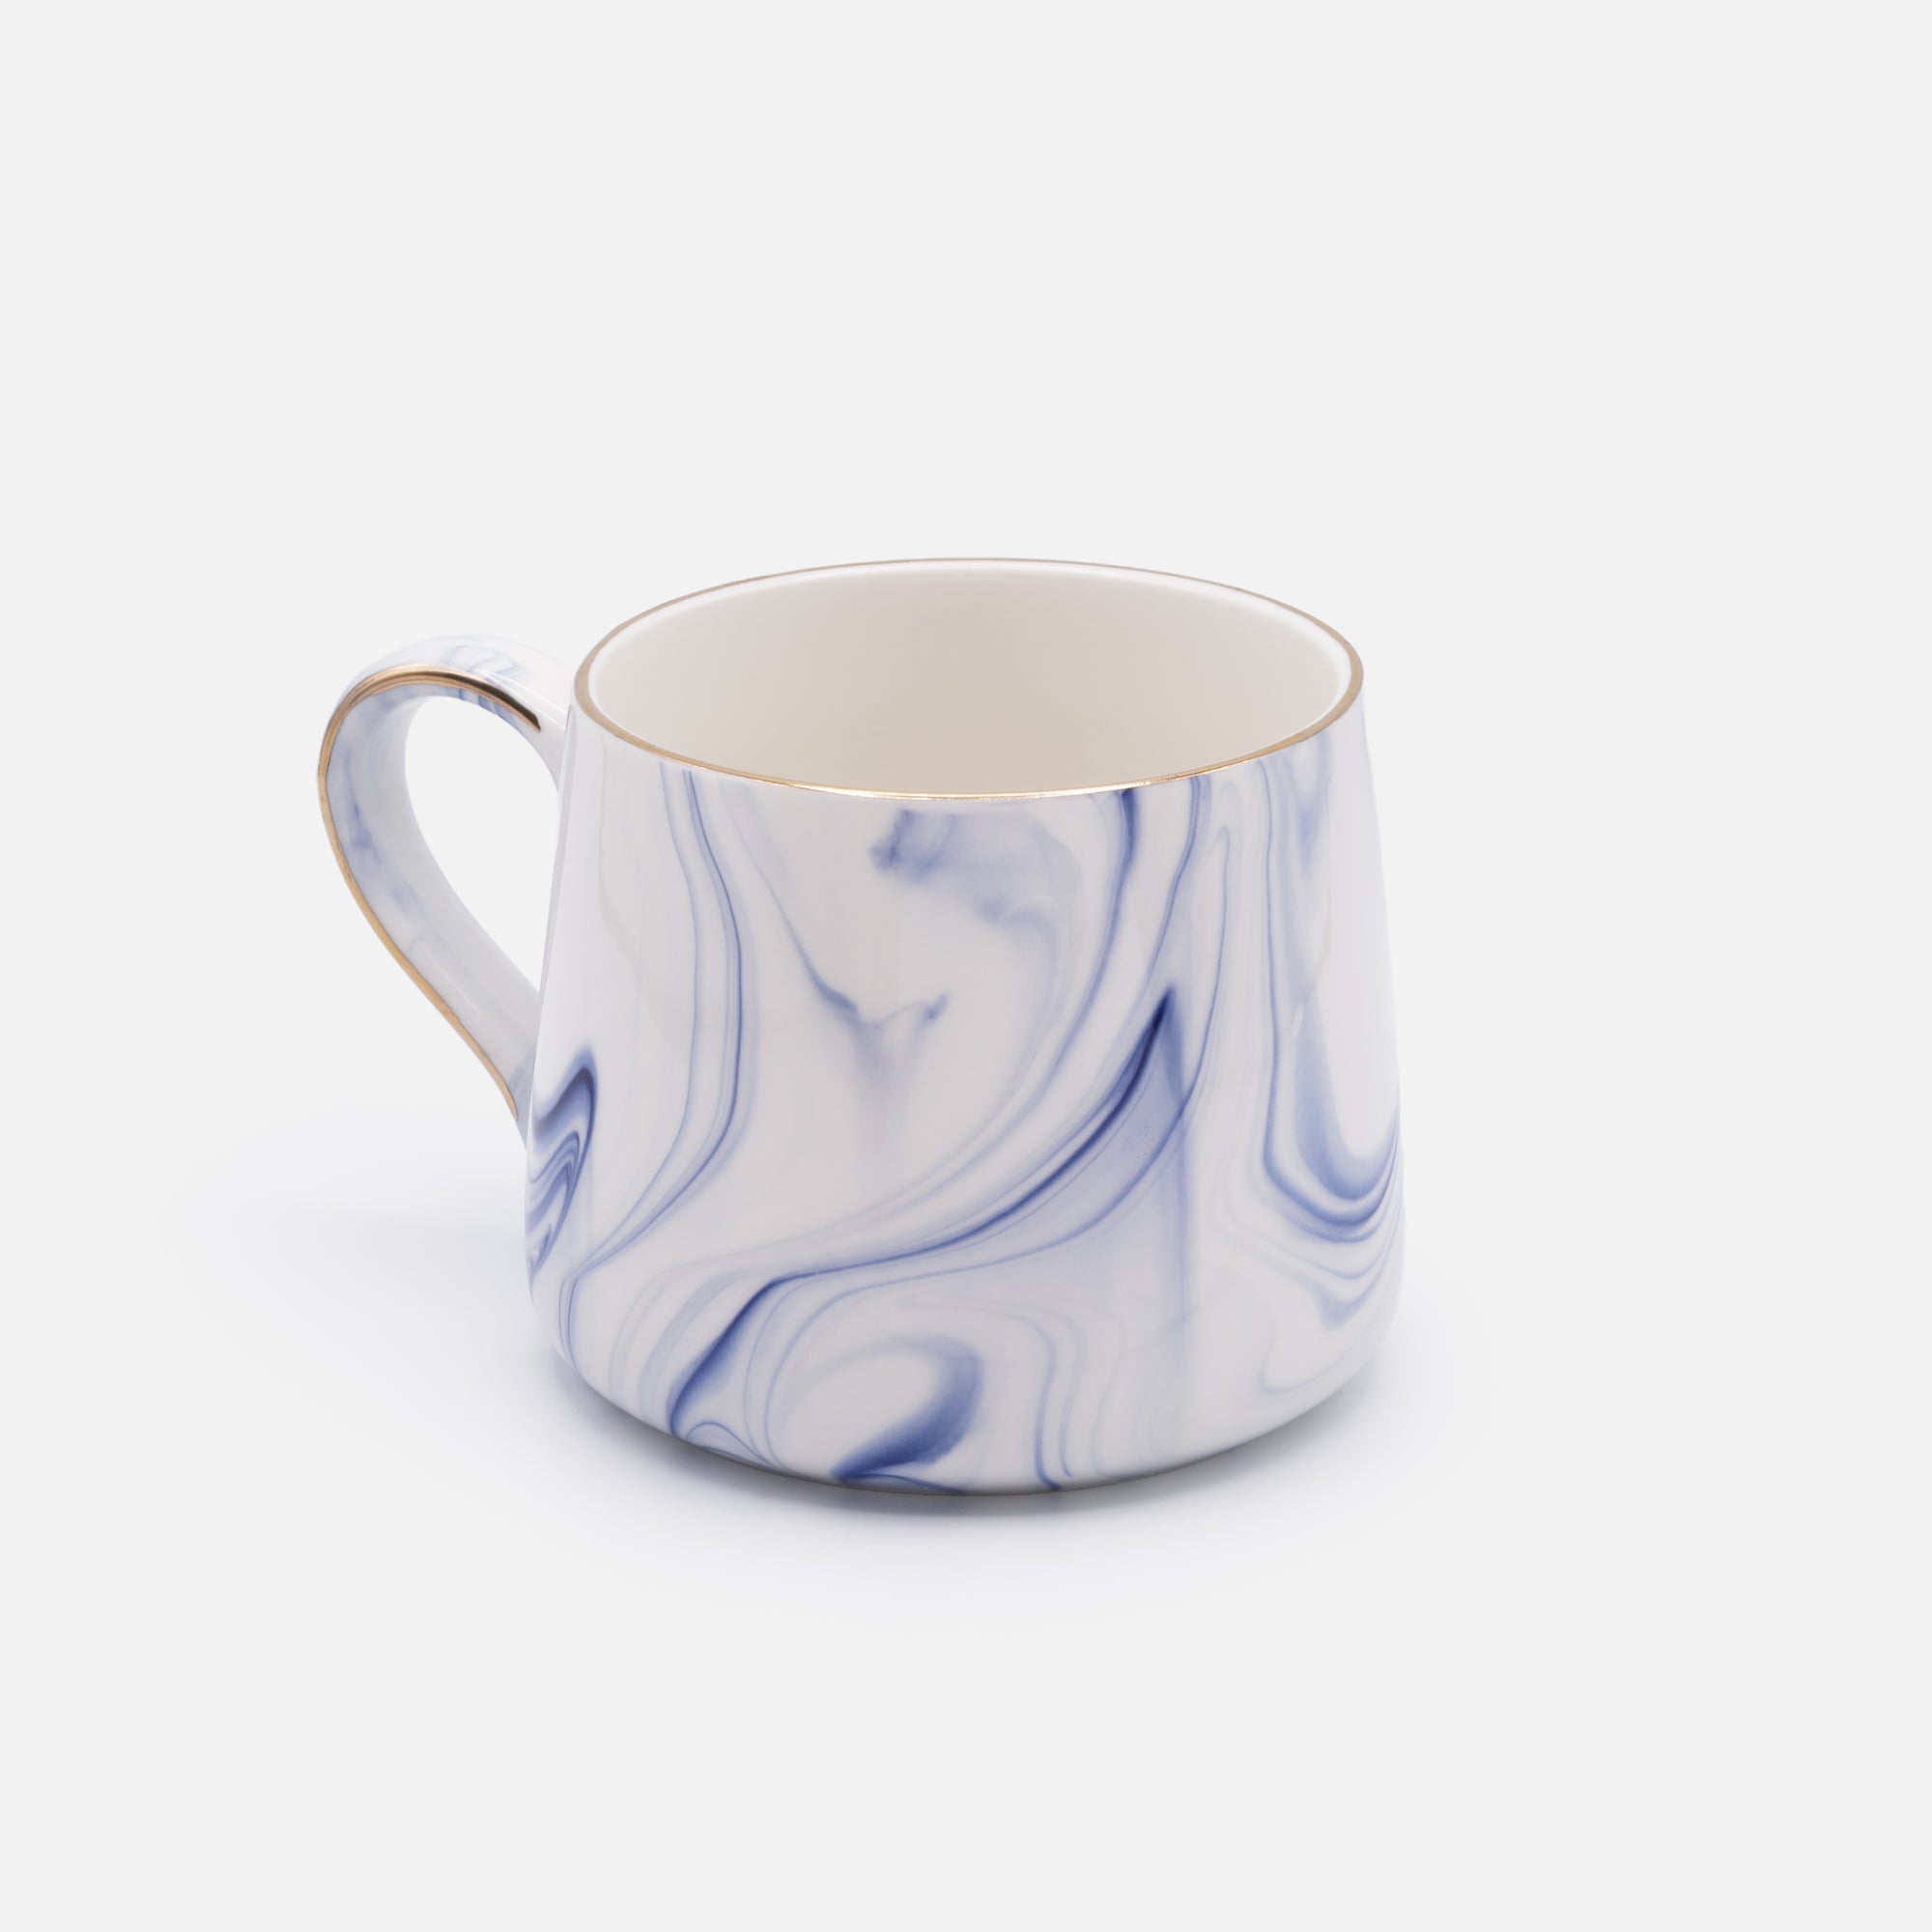 Tasse blanche avec marbrures bleues en céramique